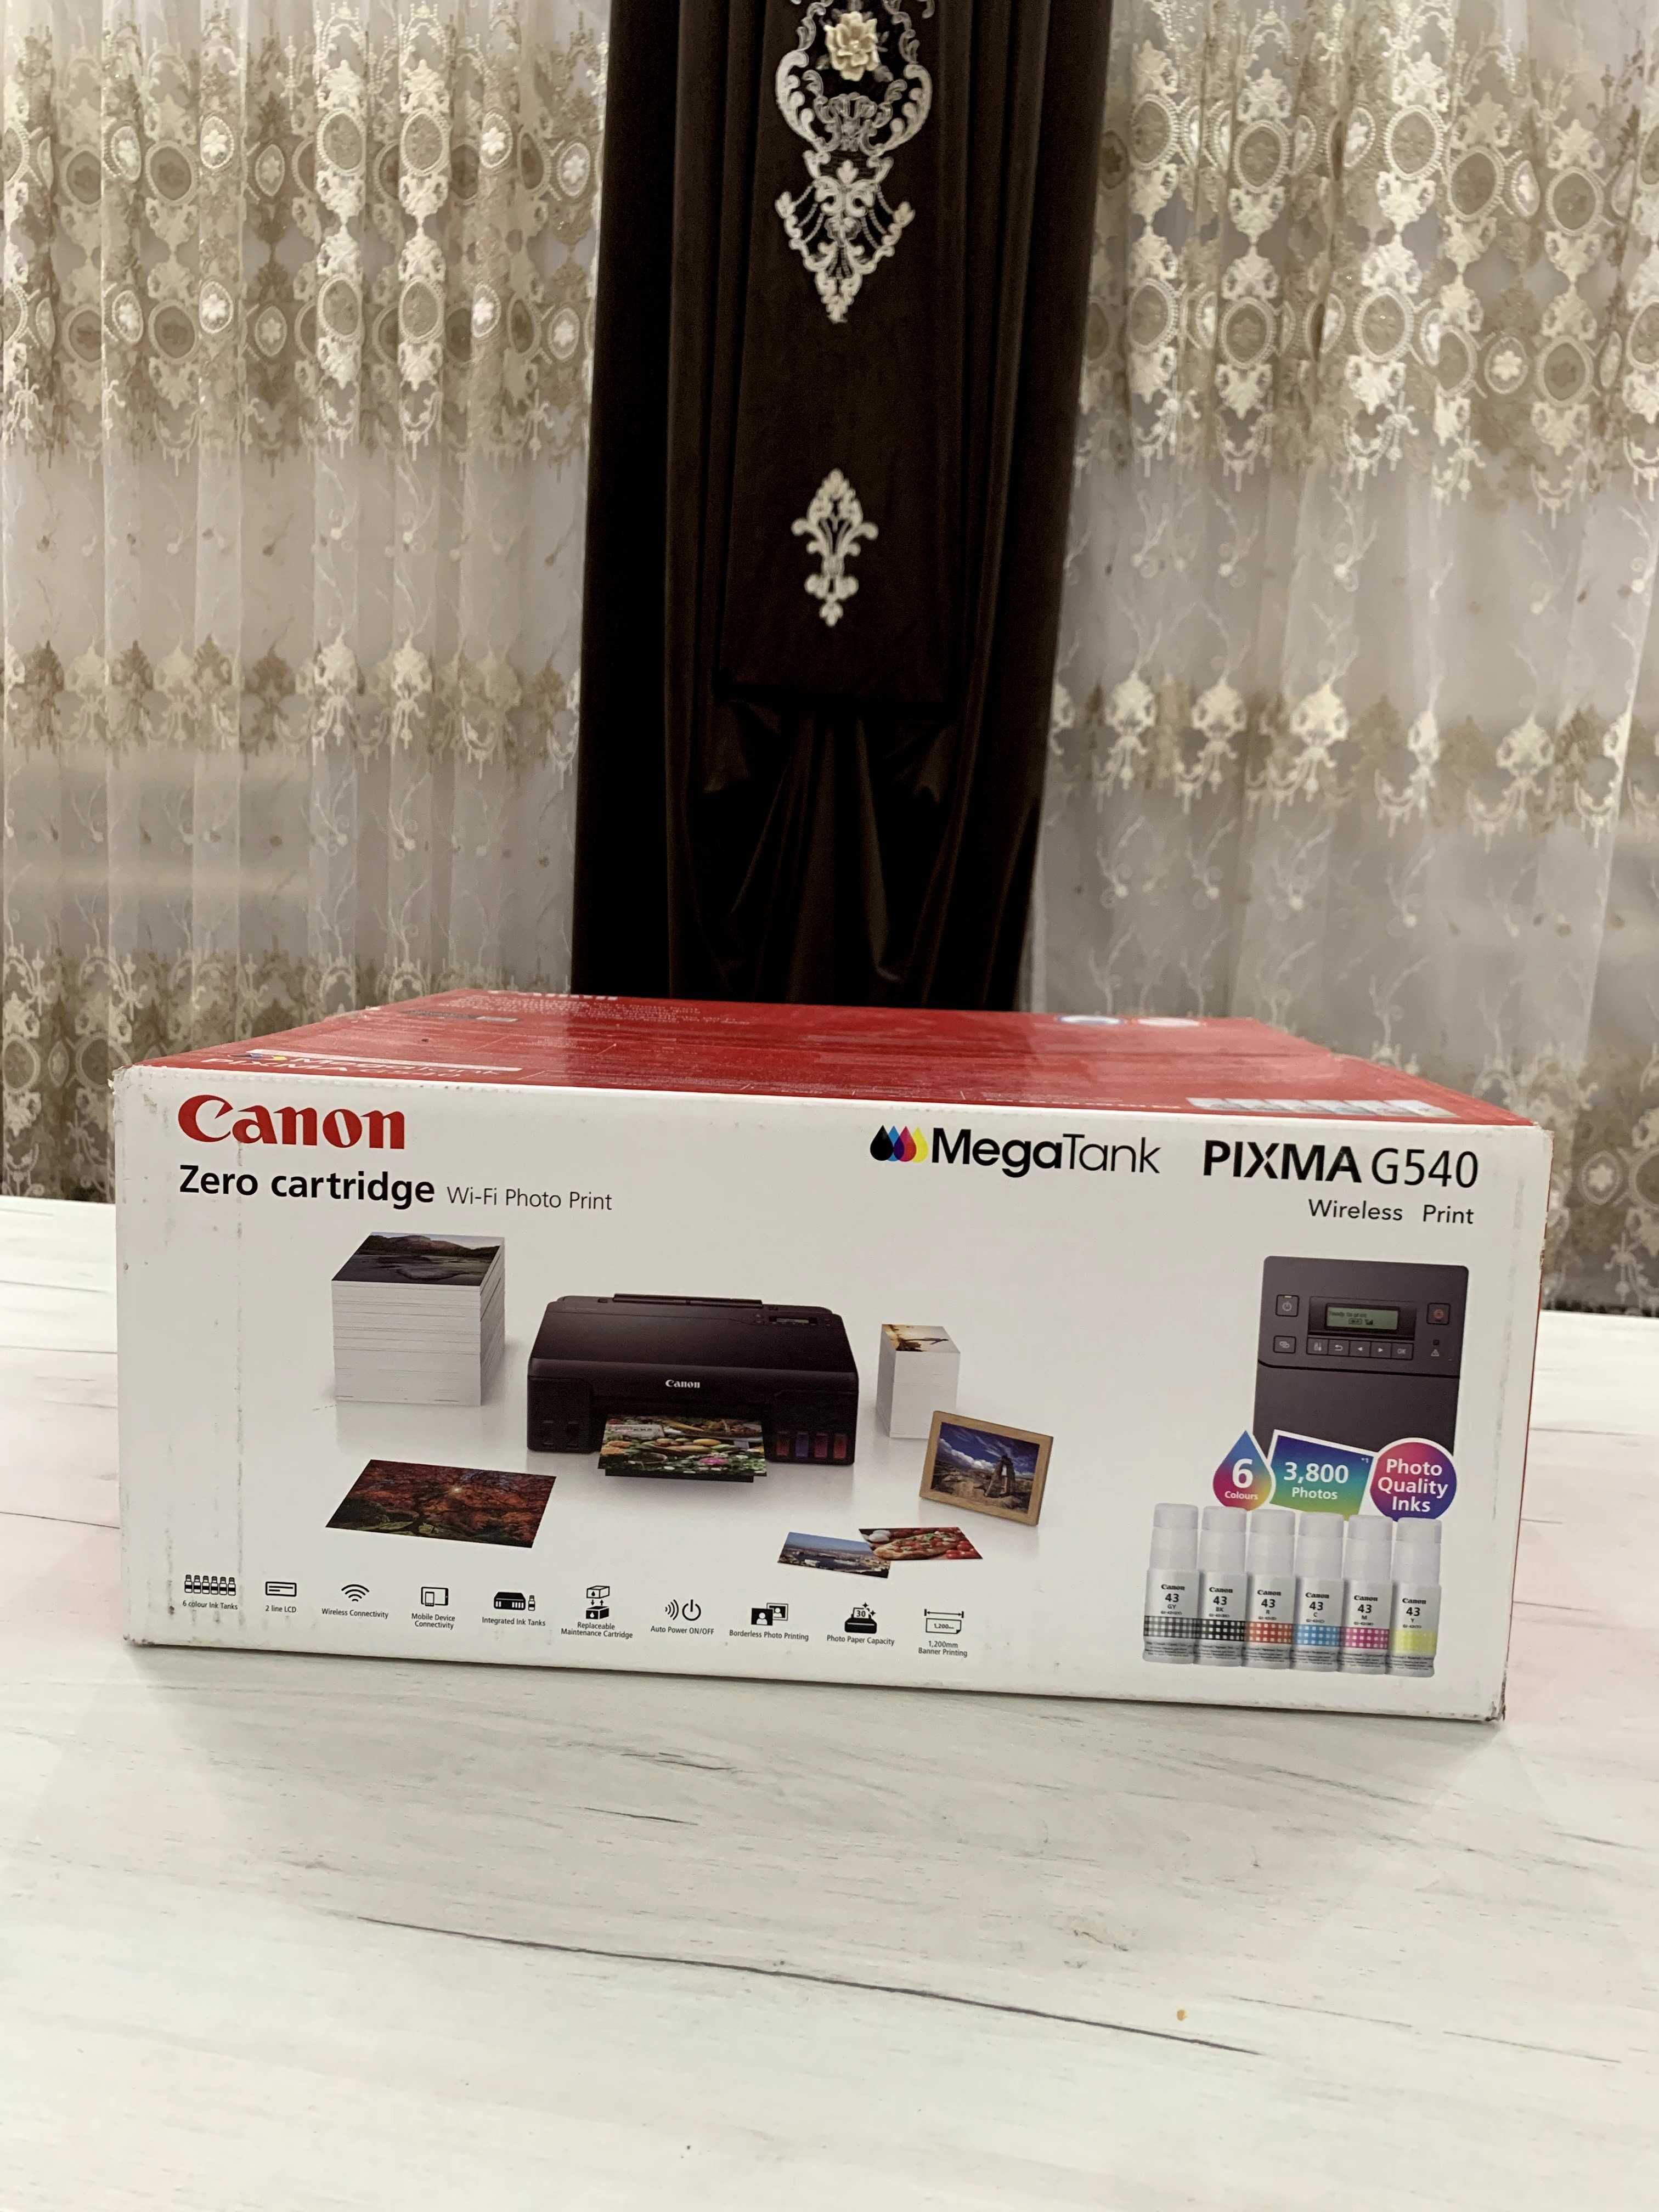 Canon Pixma G540 printeri satiladi noviy ashilmagan.